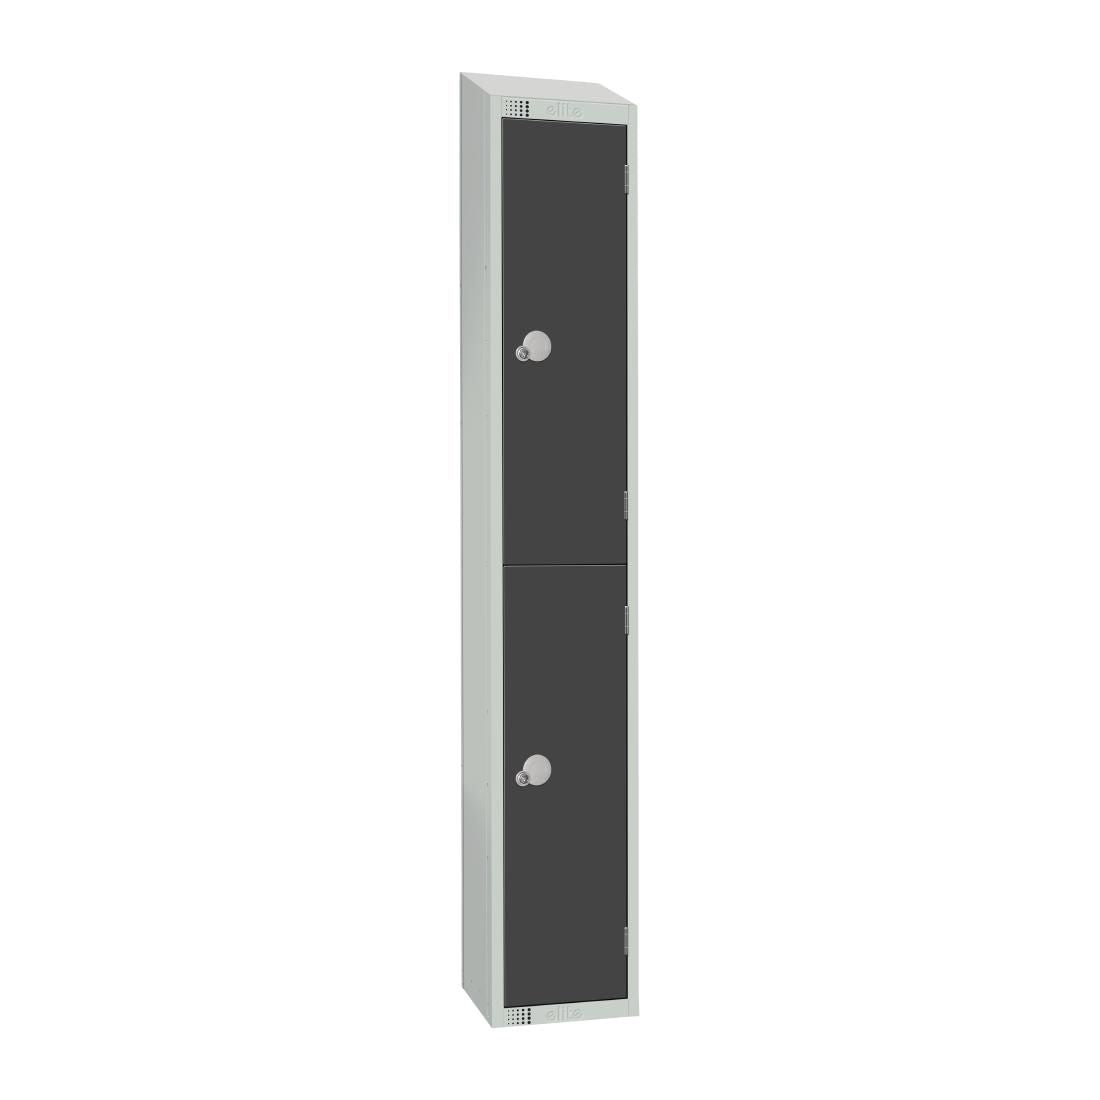 Elite Double Door Camlock Locker with Sloping Top JD Catering Equipment Solutions Ltd